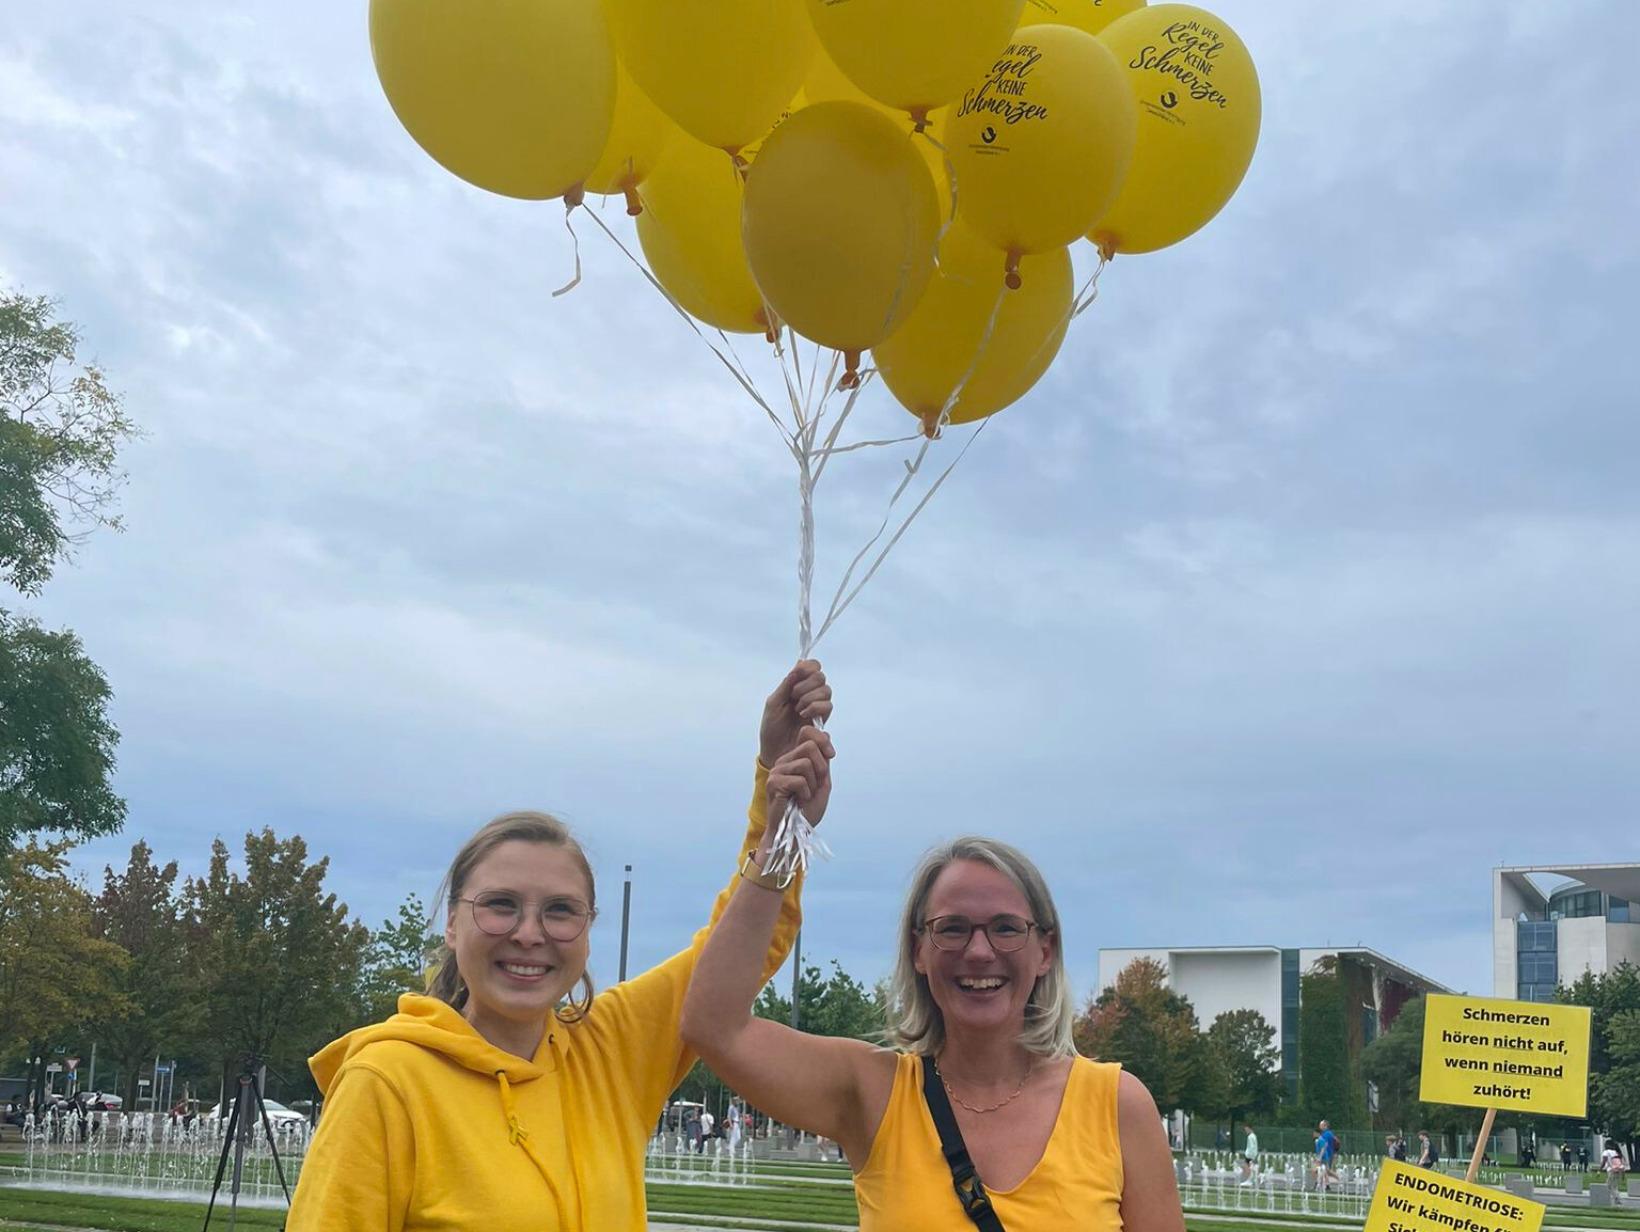 Tag der Endometriose 2023, Kundgebung in Berlin